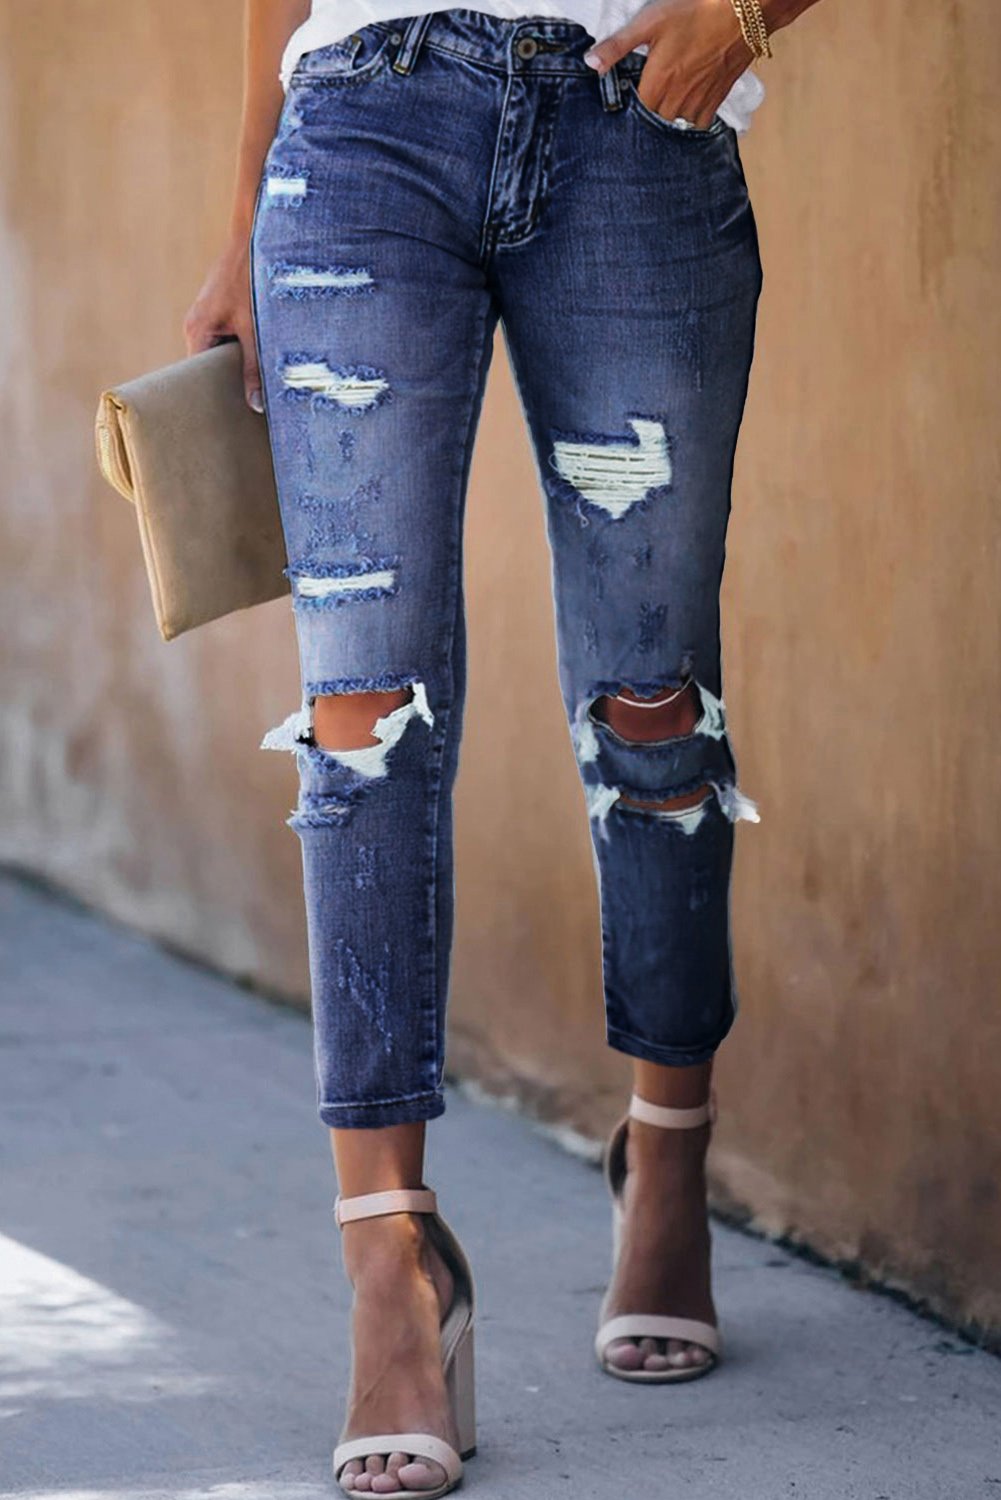 Pantalons Jeans Femme Mode Court Bleu Delave Trous Vieillis